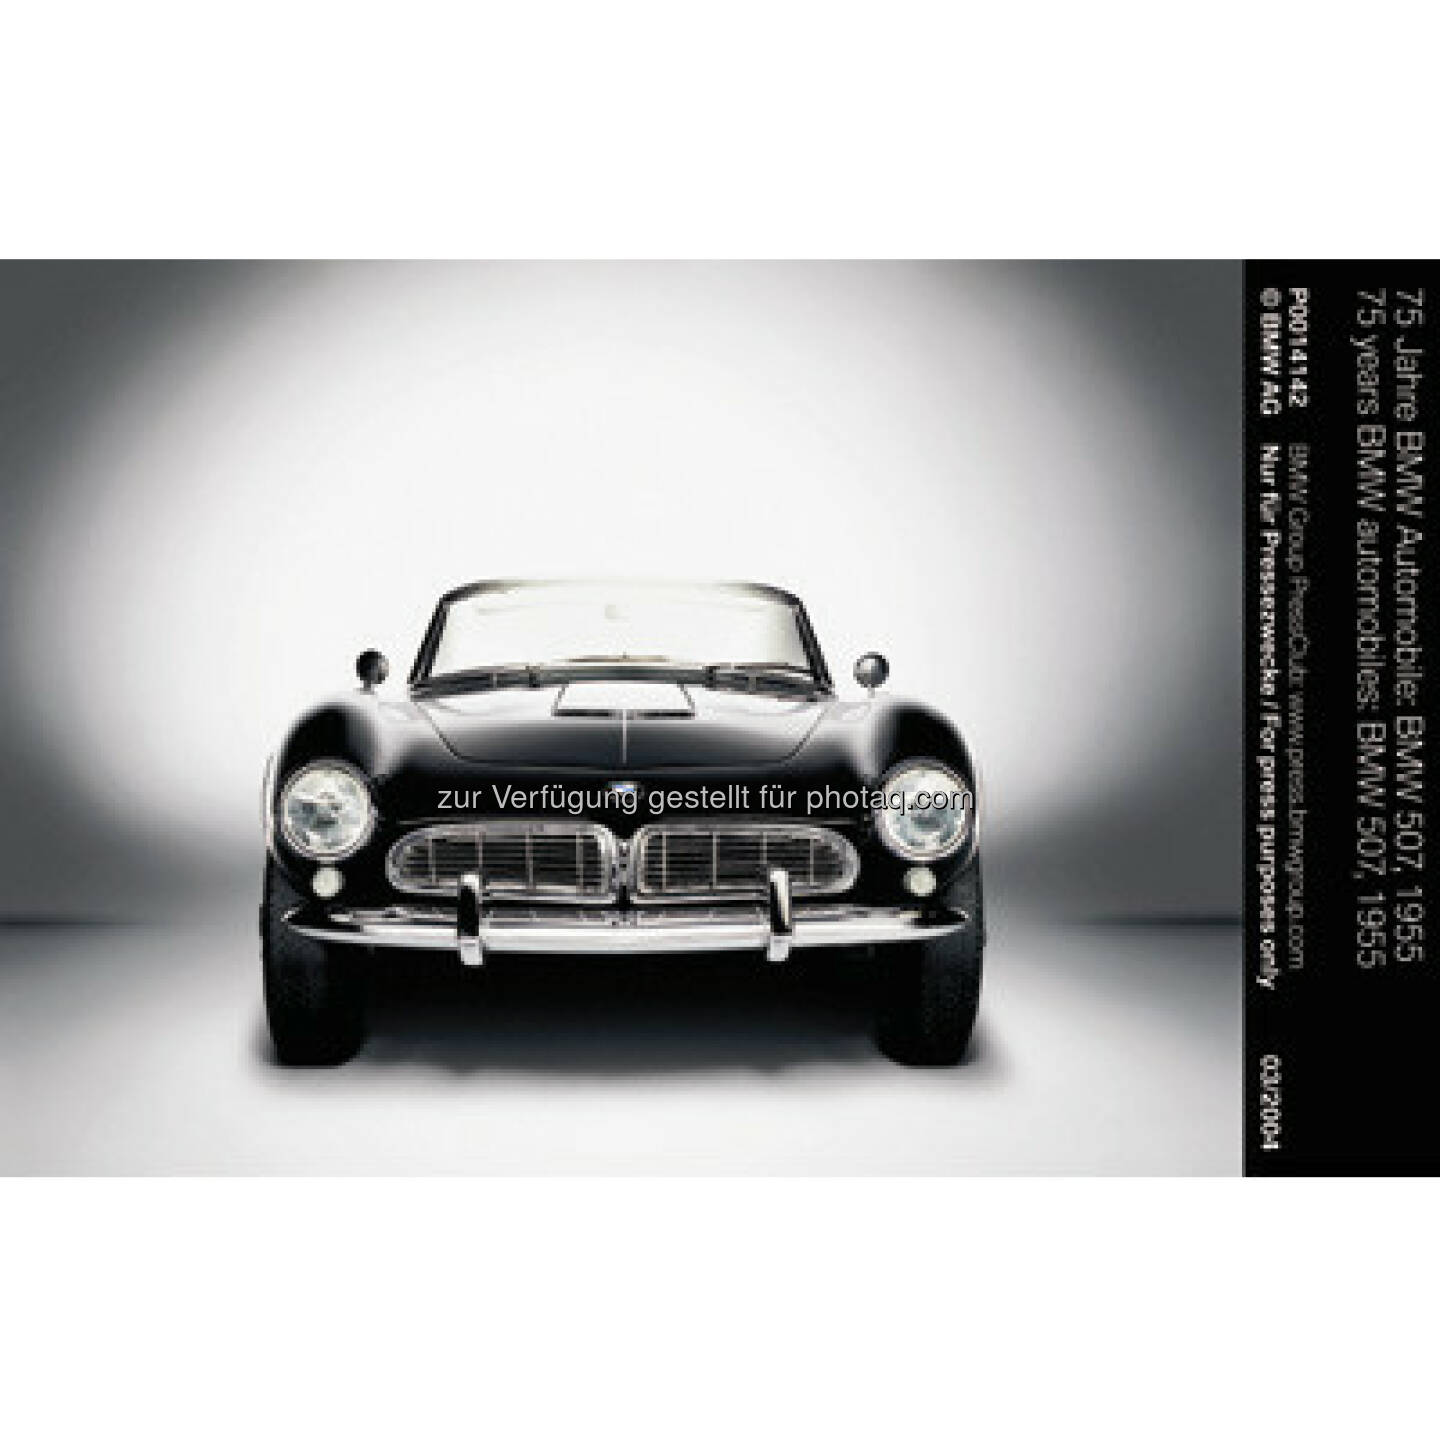 BMW 507, 1955 : BMW ist erfolgreichste Marke beim „Motor Klassik Award“ 2016 : Leser des Fachmagazins „Motor Klassik“ küren den BMW 507 und den BMW M1 zu den herausragenden Automobilen ihrer jeweiligen Epoche : Fotocredit: © BMW Group